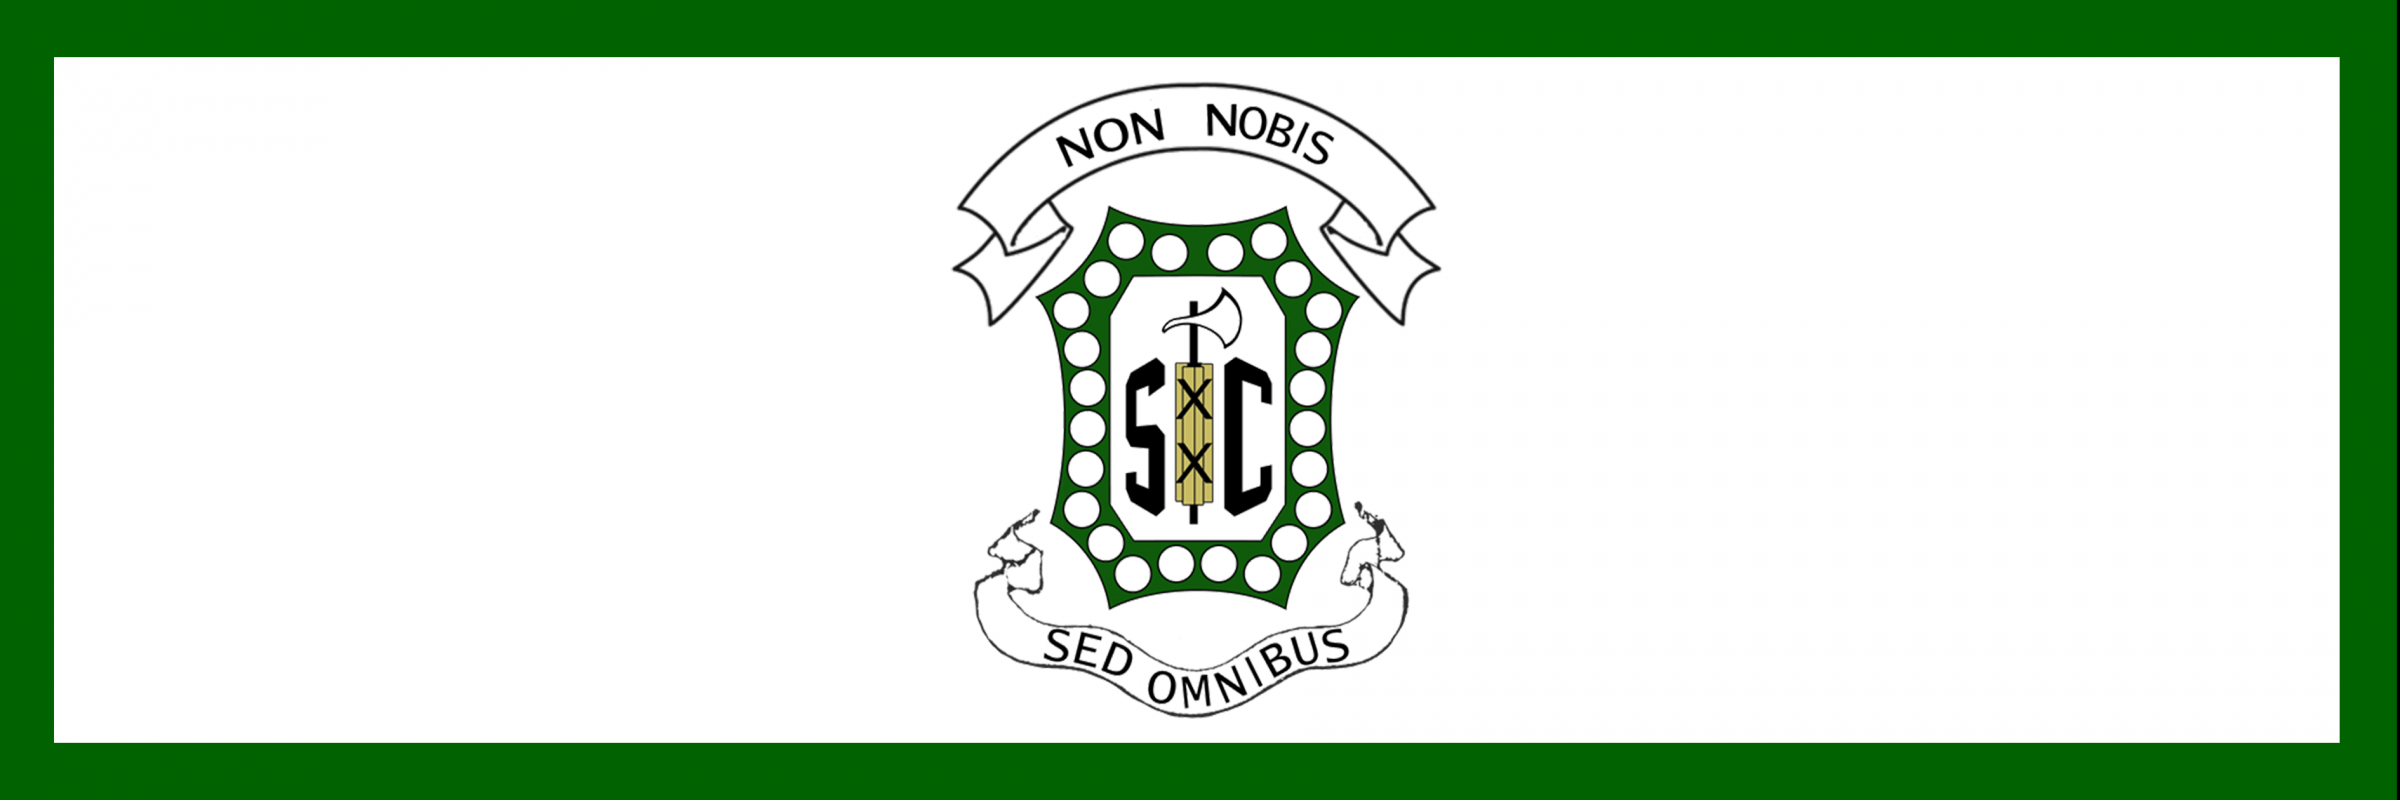 Senators Club logo: Non Nobis Sed Omnibus